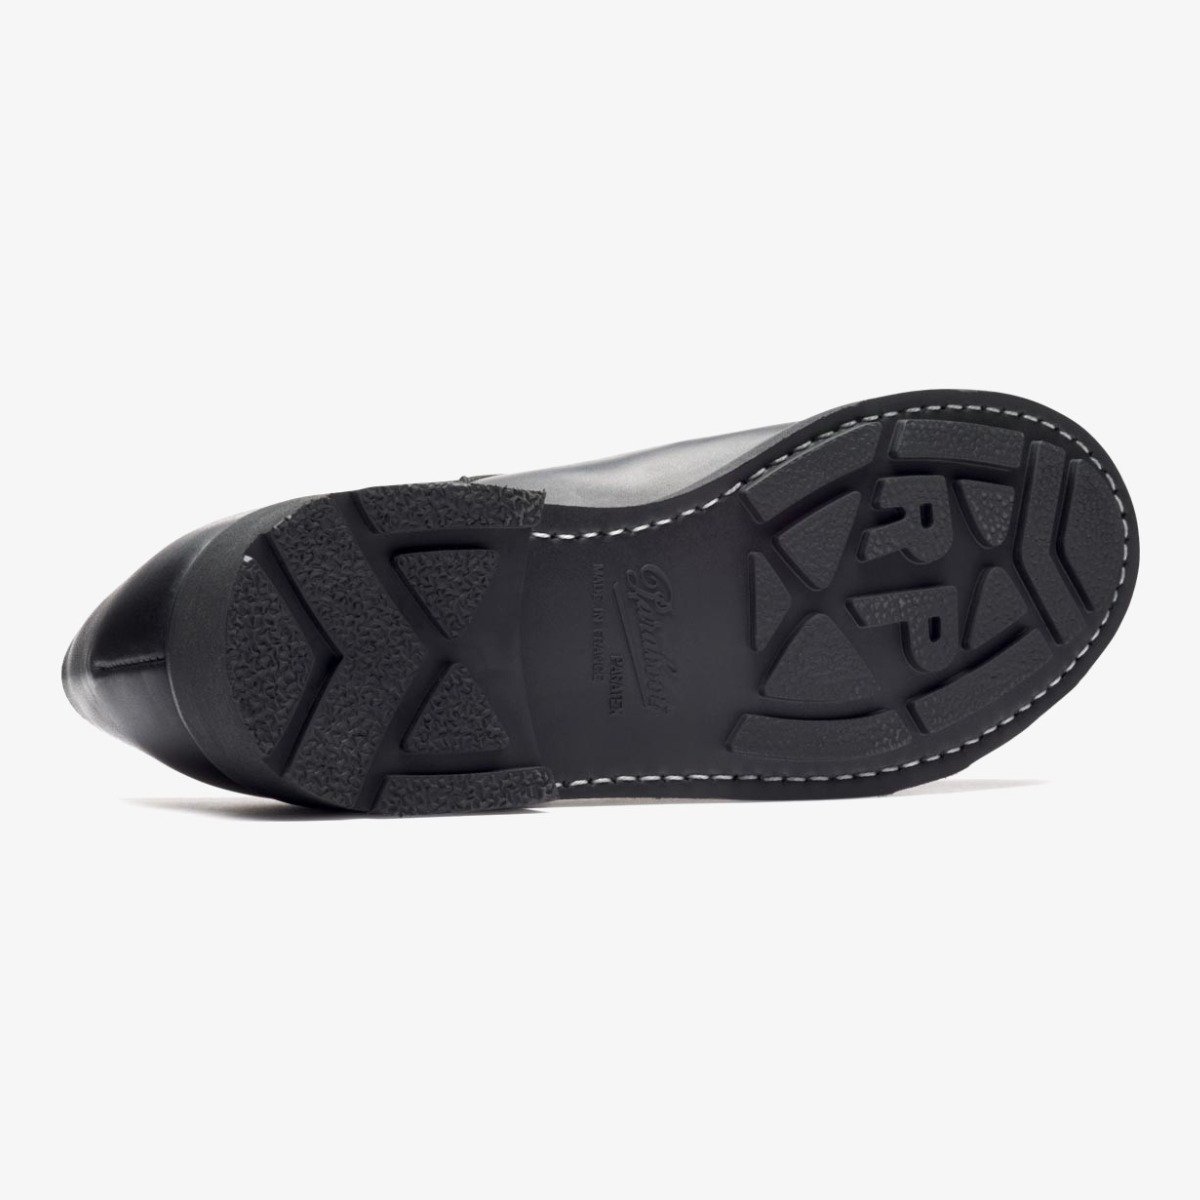 Paraboot Chambord noir apron toe derby shoes